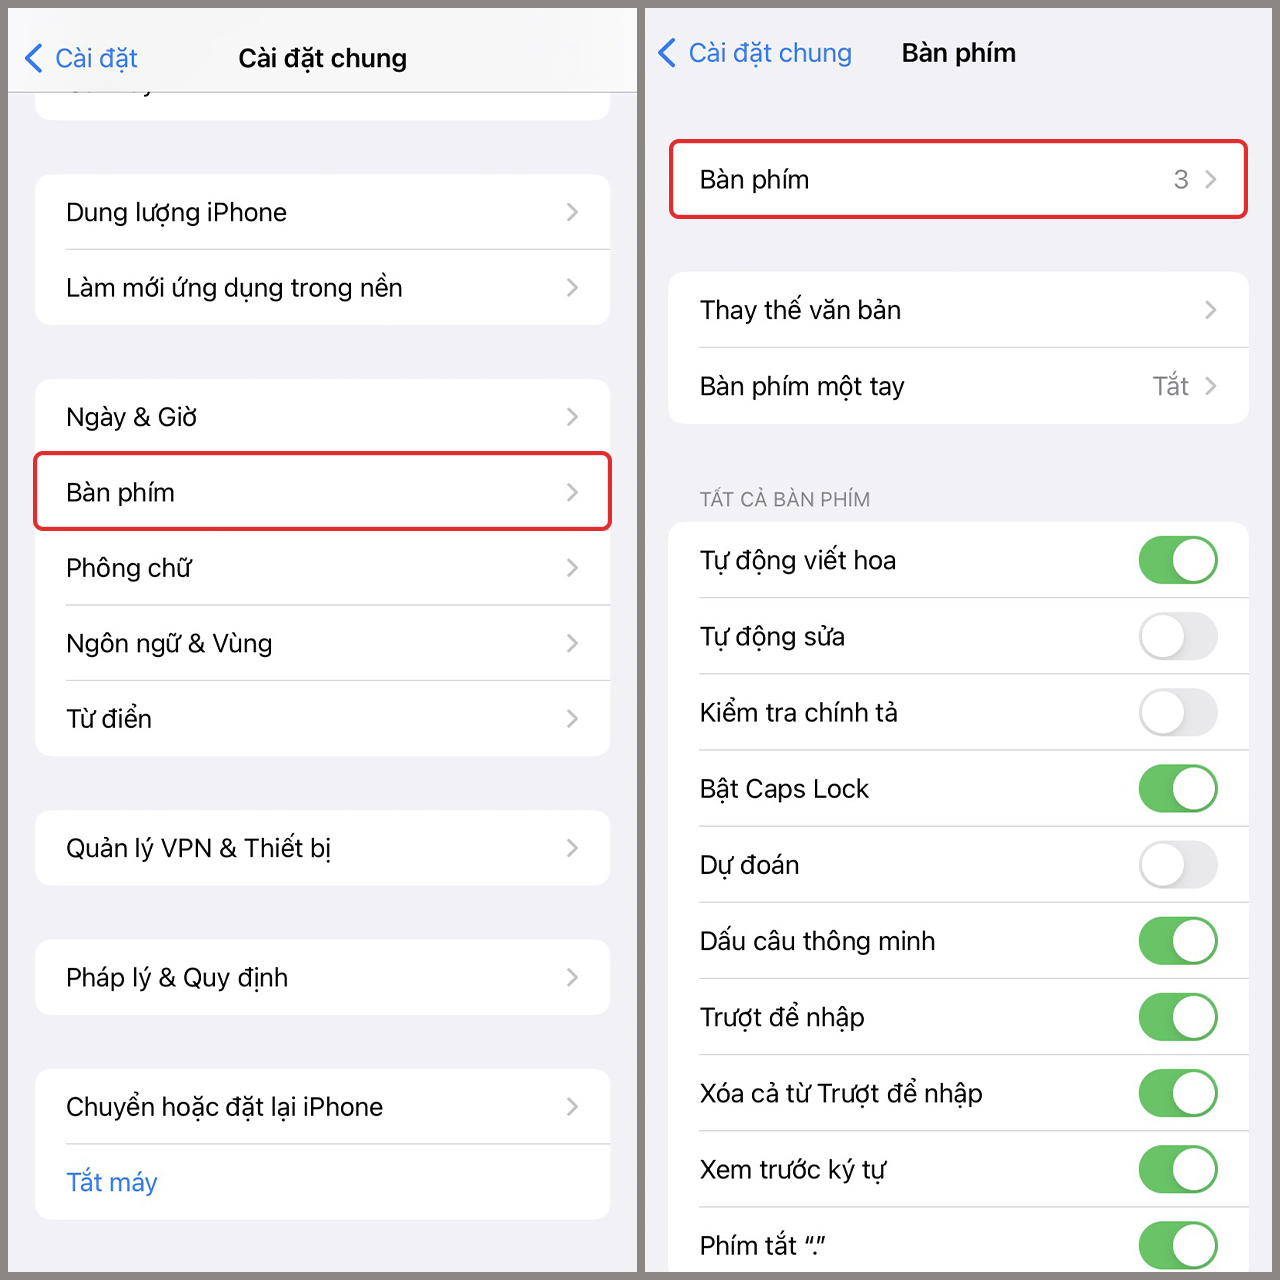 Nếu bạn đã gặp phải lỗi bàn phím tiếng Việt trên iOS 16, đừng lo lắng! Hướng dẫn khắc phục lỗi bàn phím tiếng Việt trên iOS 16 luôn sẵn sàng giúp bạn khắc phục vấn đề này và tiếp tục sử dụng điện thoại của mình một cách dễ dàng. Hãy theo dõi hướng dẫn và sẵn sàng để cho iPhone của bạn trở lại bình thường.